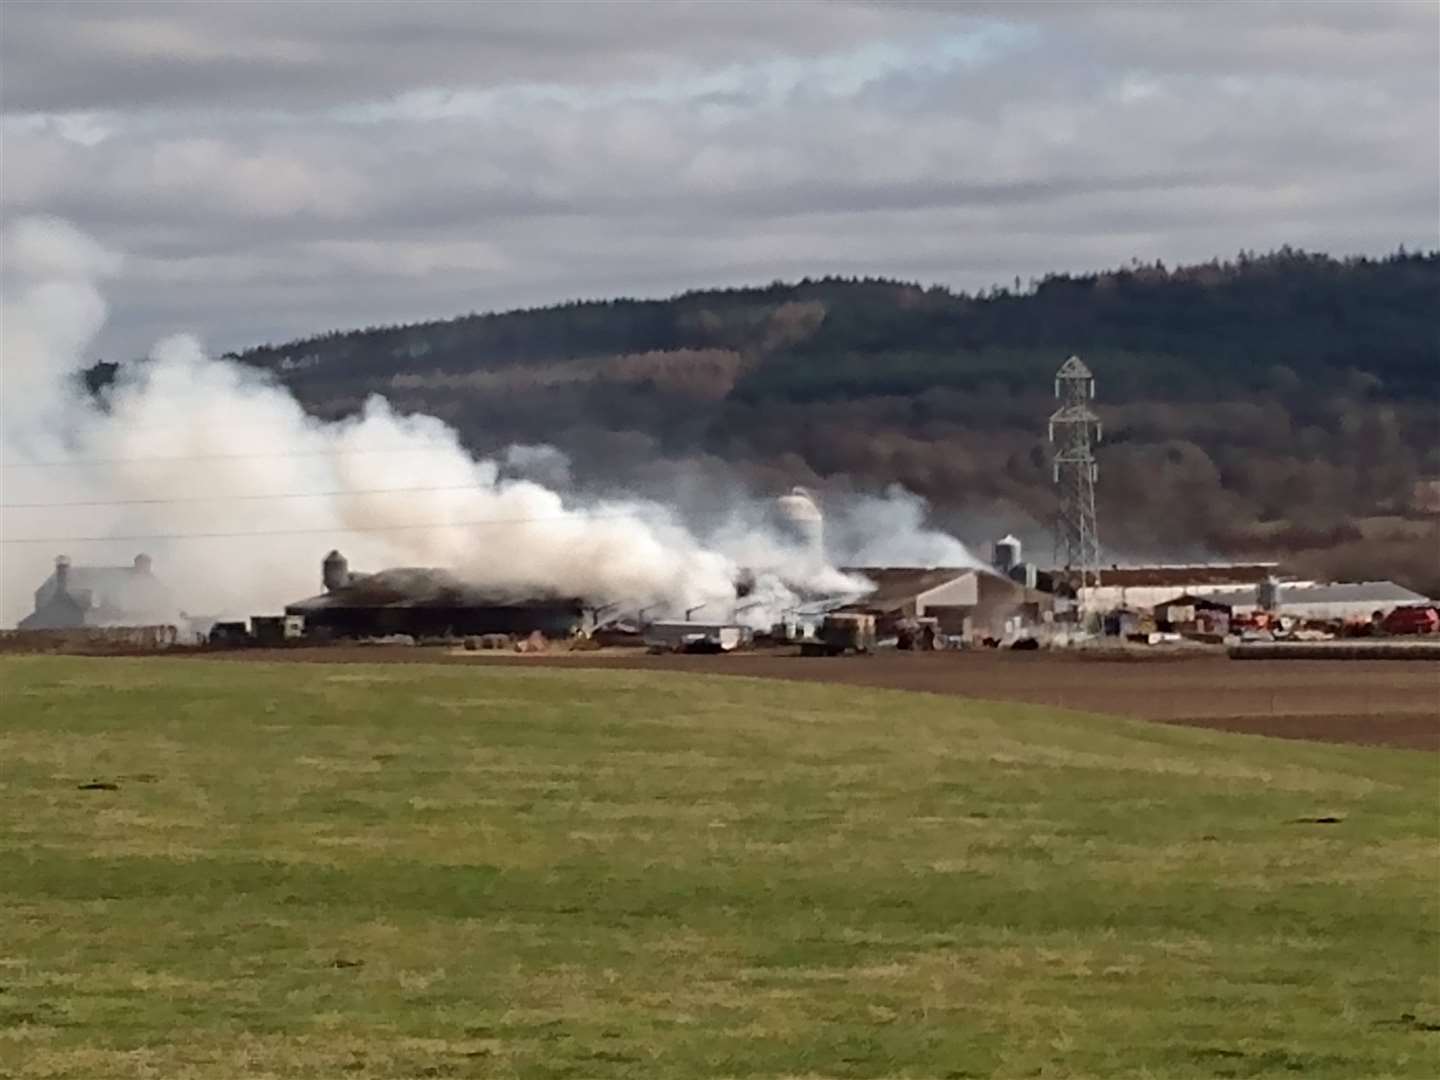 Fire at a farm.